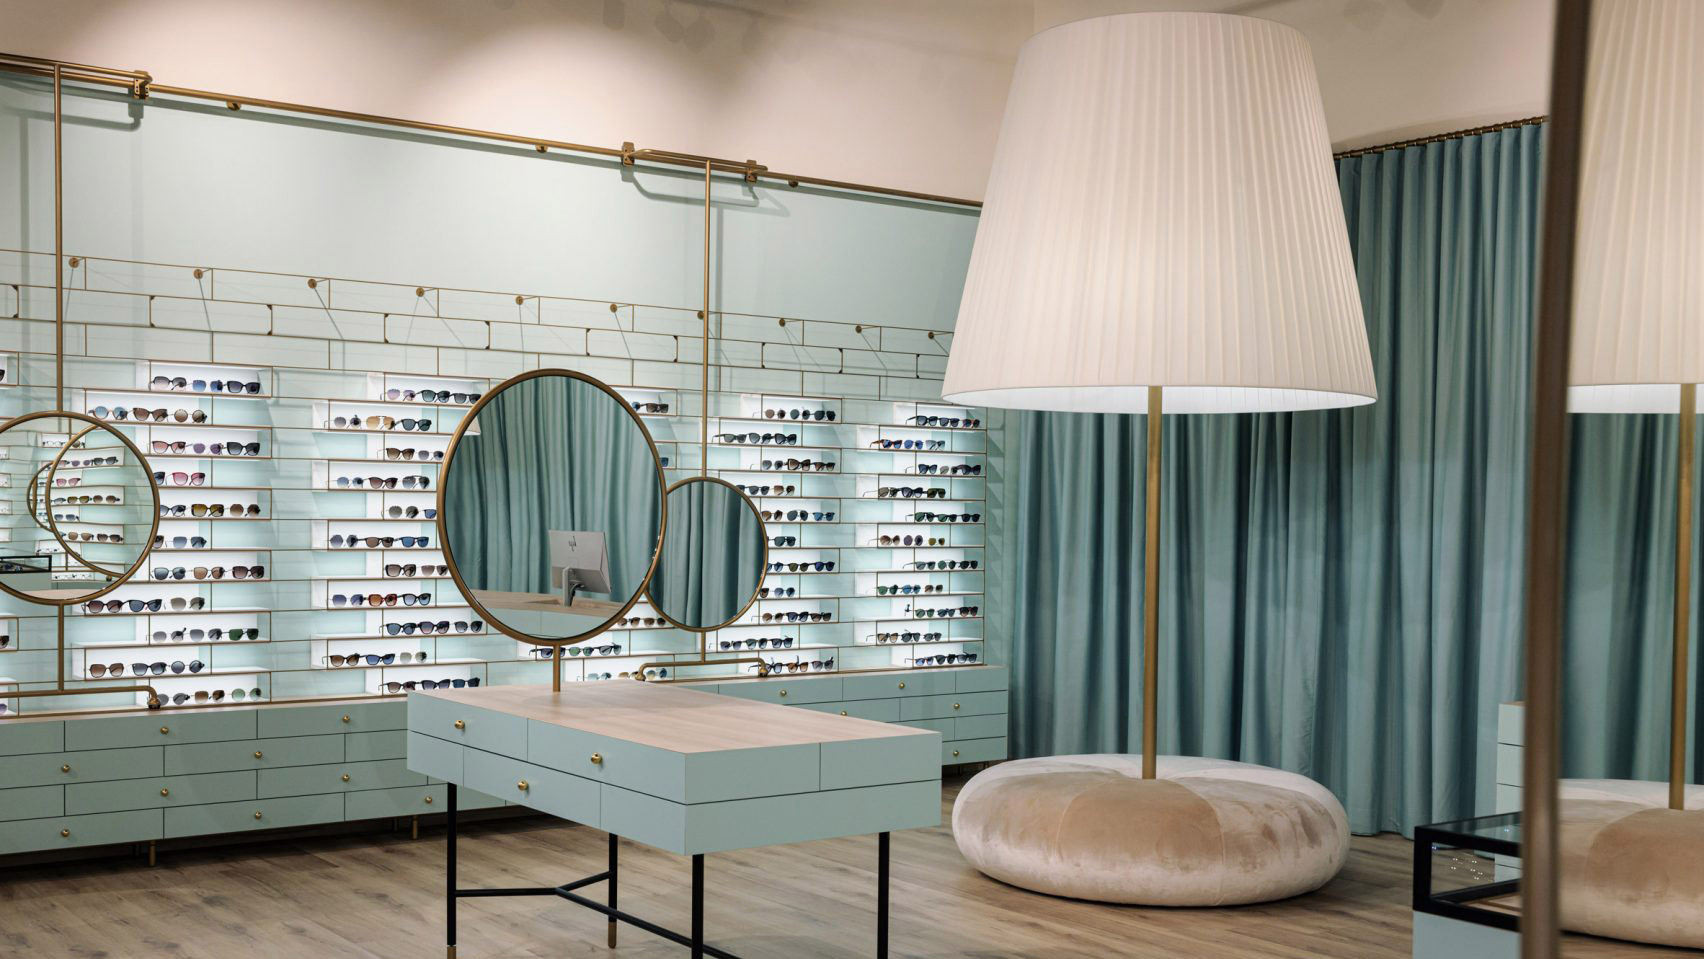 Nika Zupanc brings Alice in Wonderland aesthetic to Morela eyewear shop